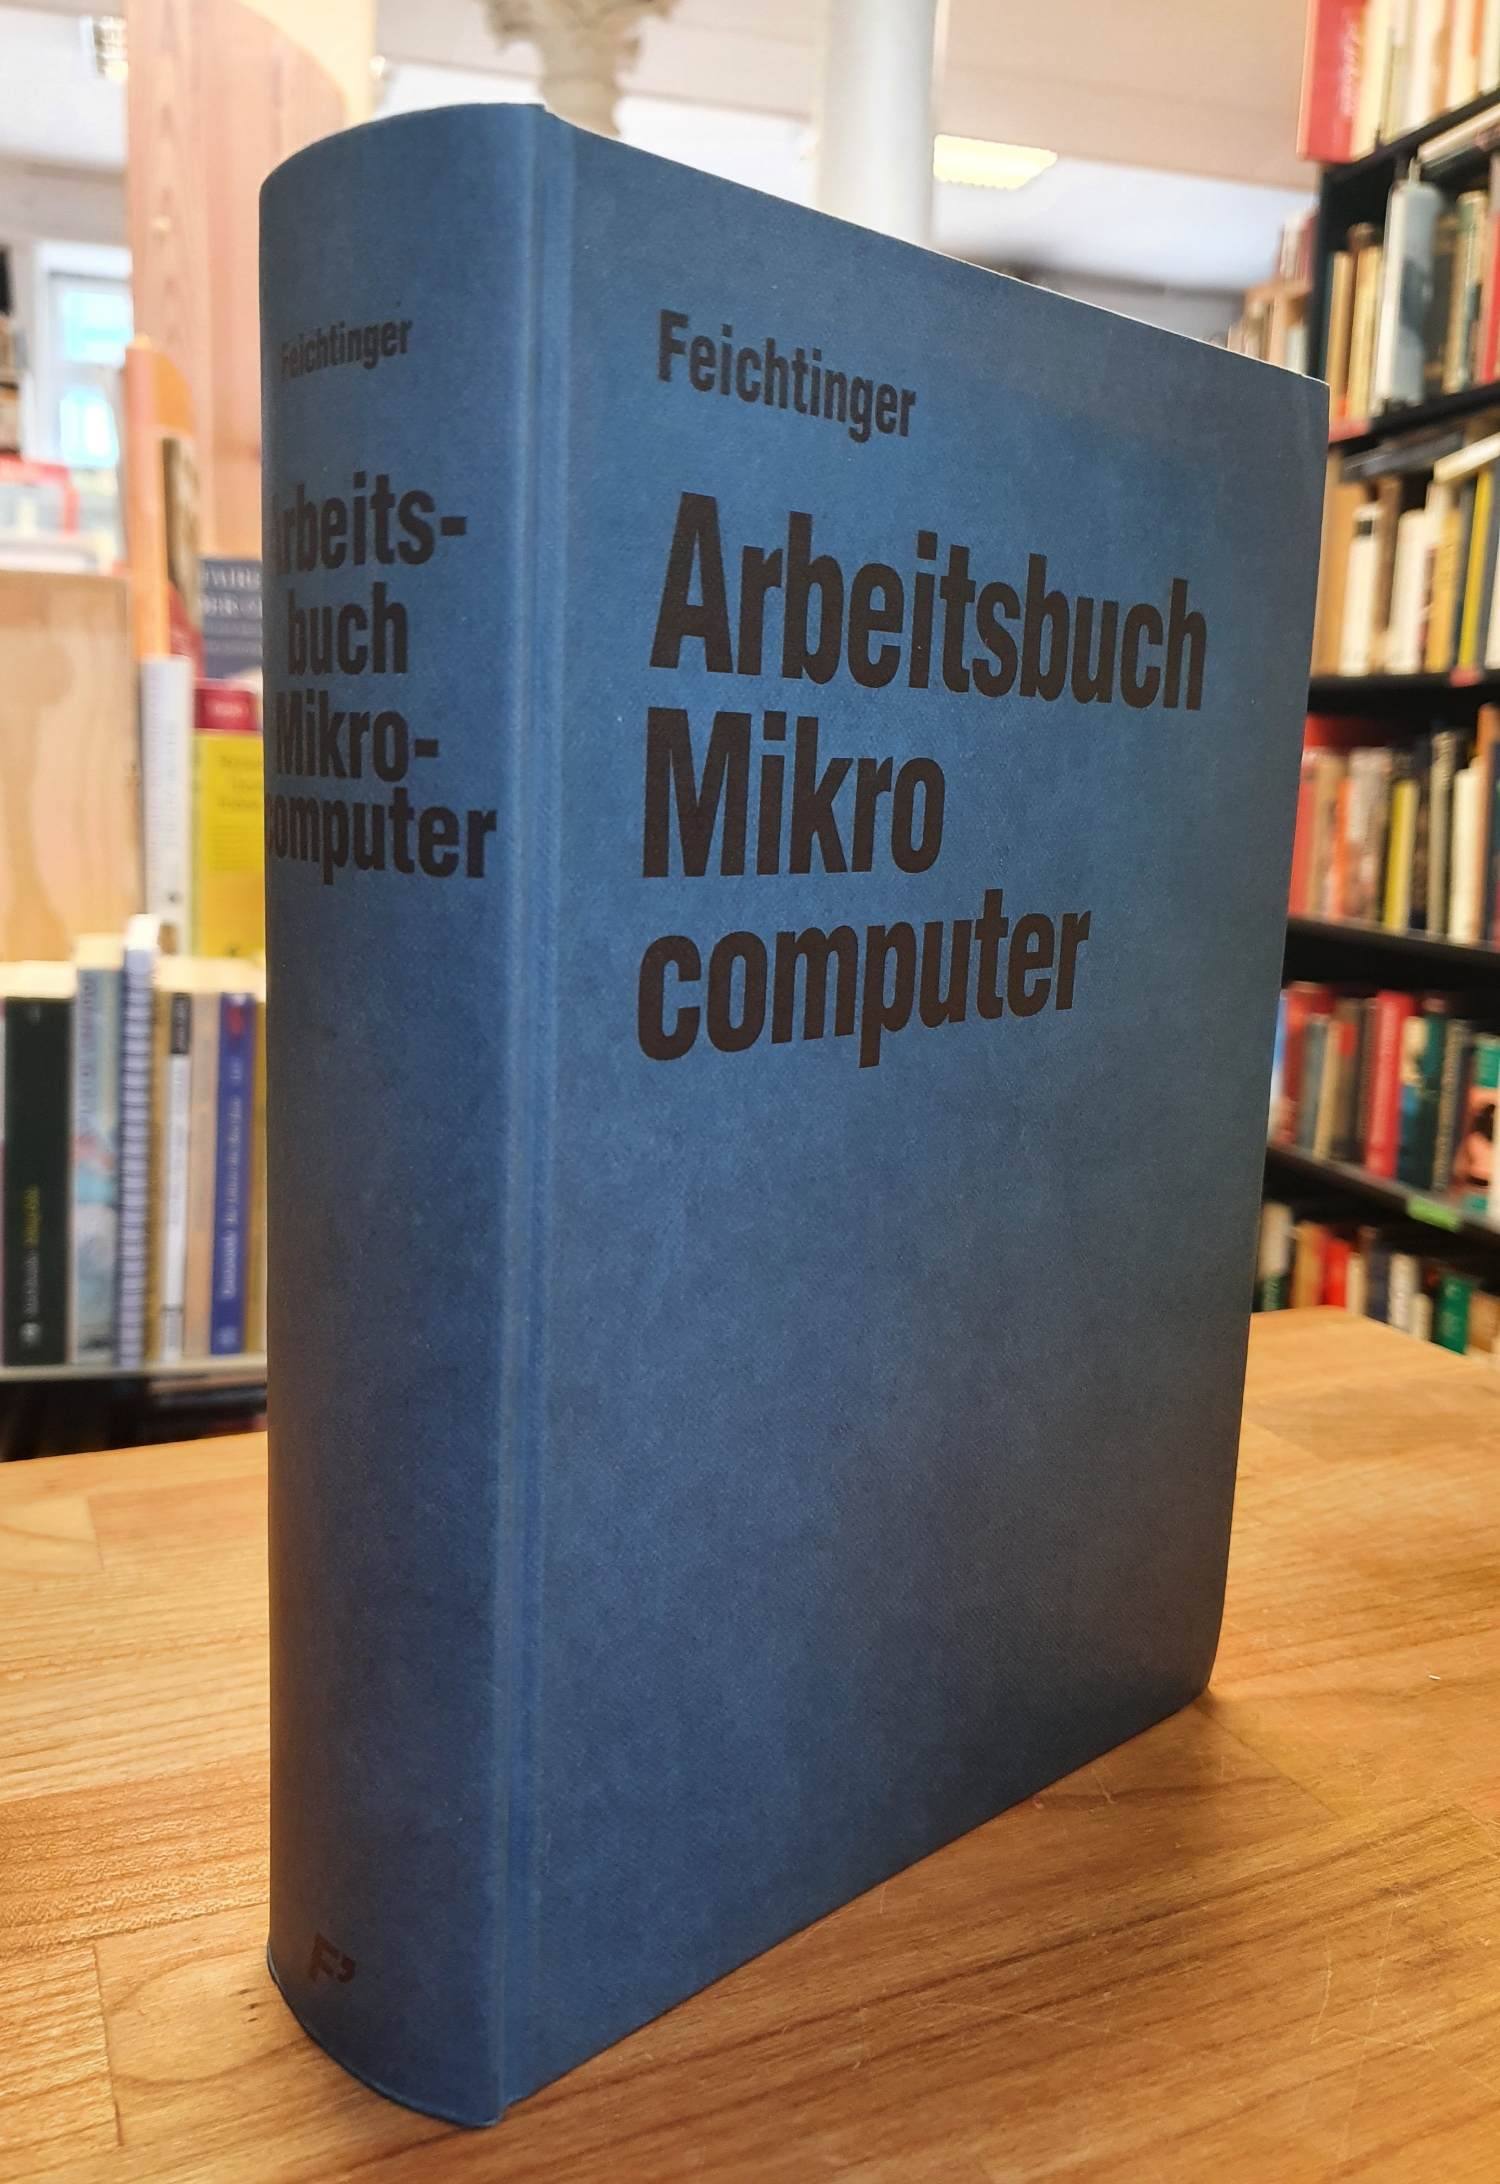 Feichtinger, Arbeitsbuch Mikrocomputer – Funktion und Anwendung von Mikrocompute